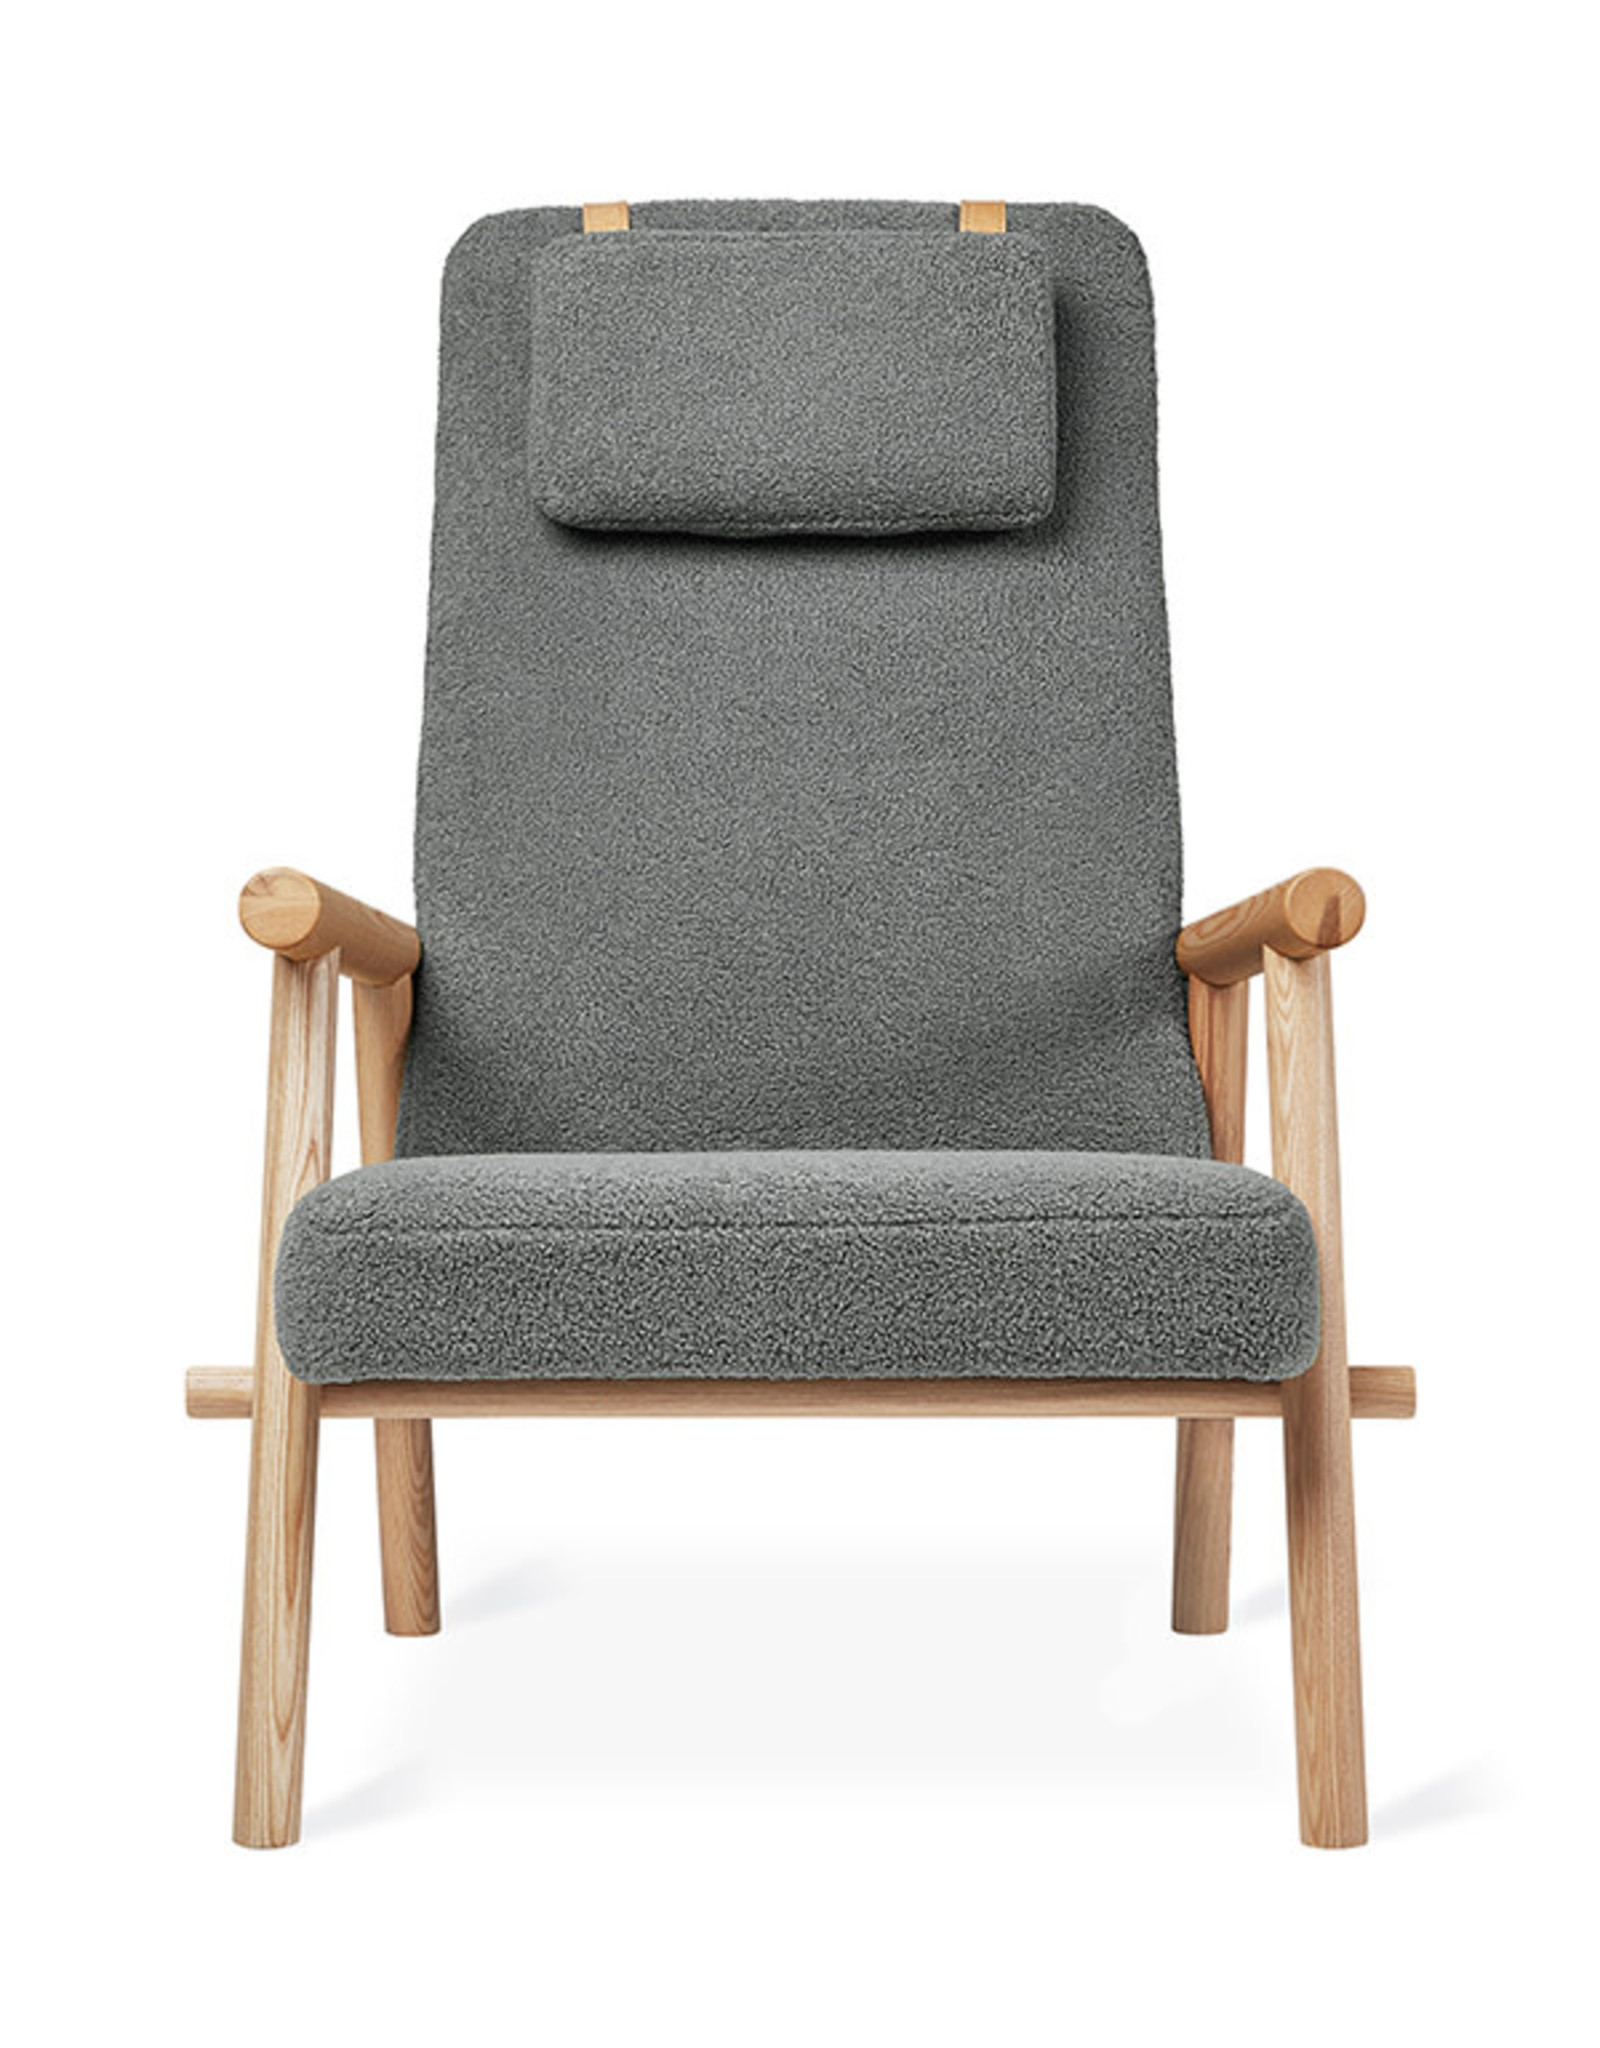 Gus* Modern Labrador Chair